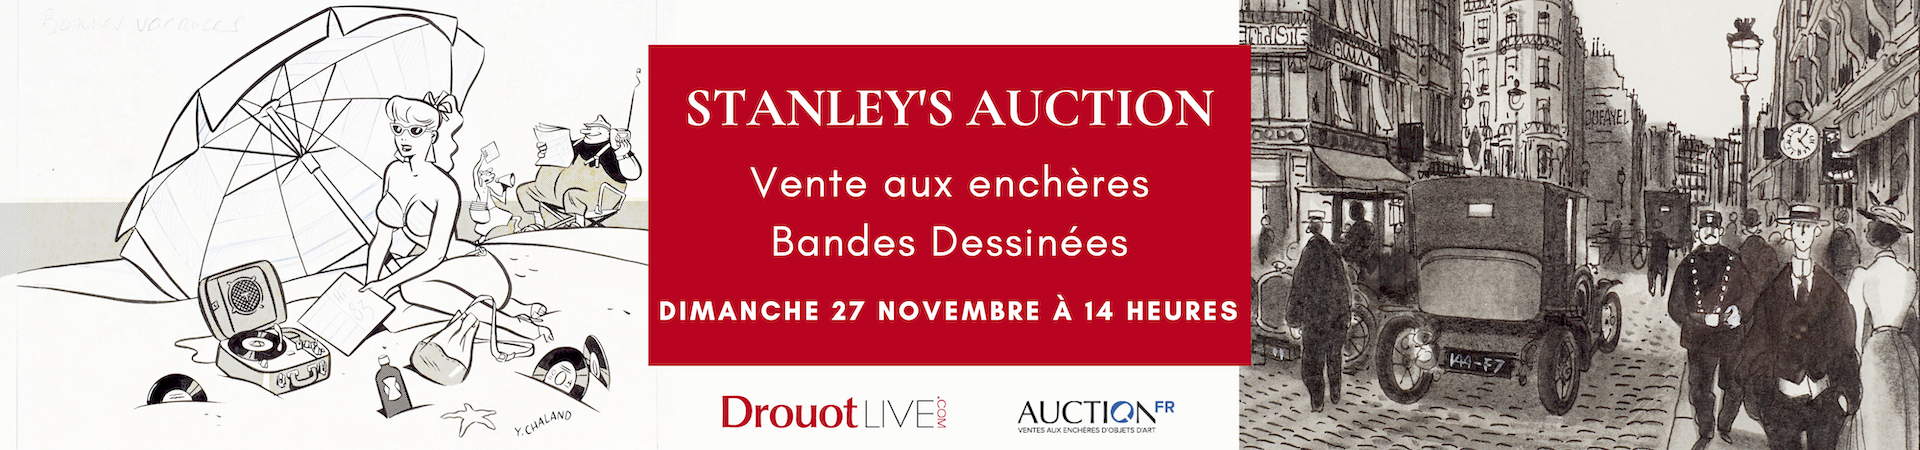 Vente aux enchères - Stanley's auction